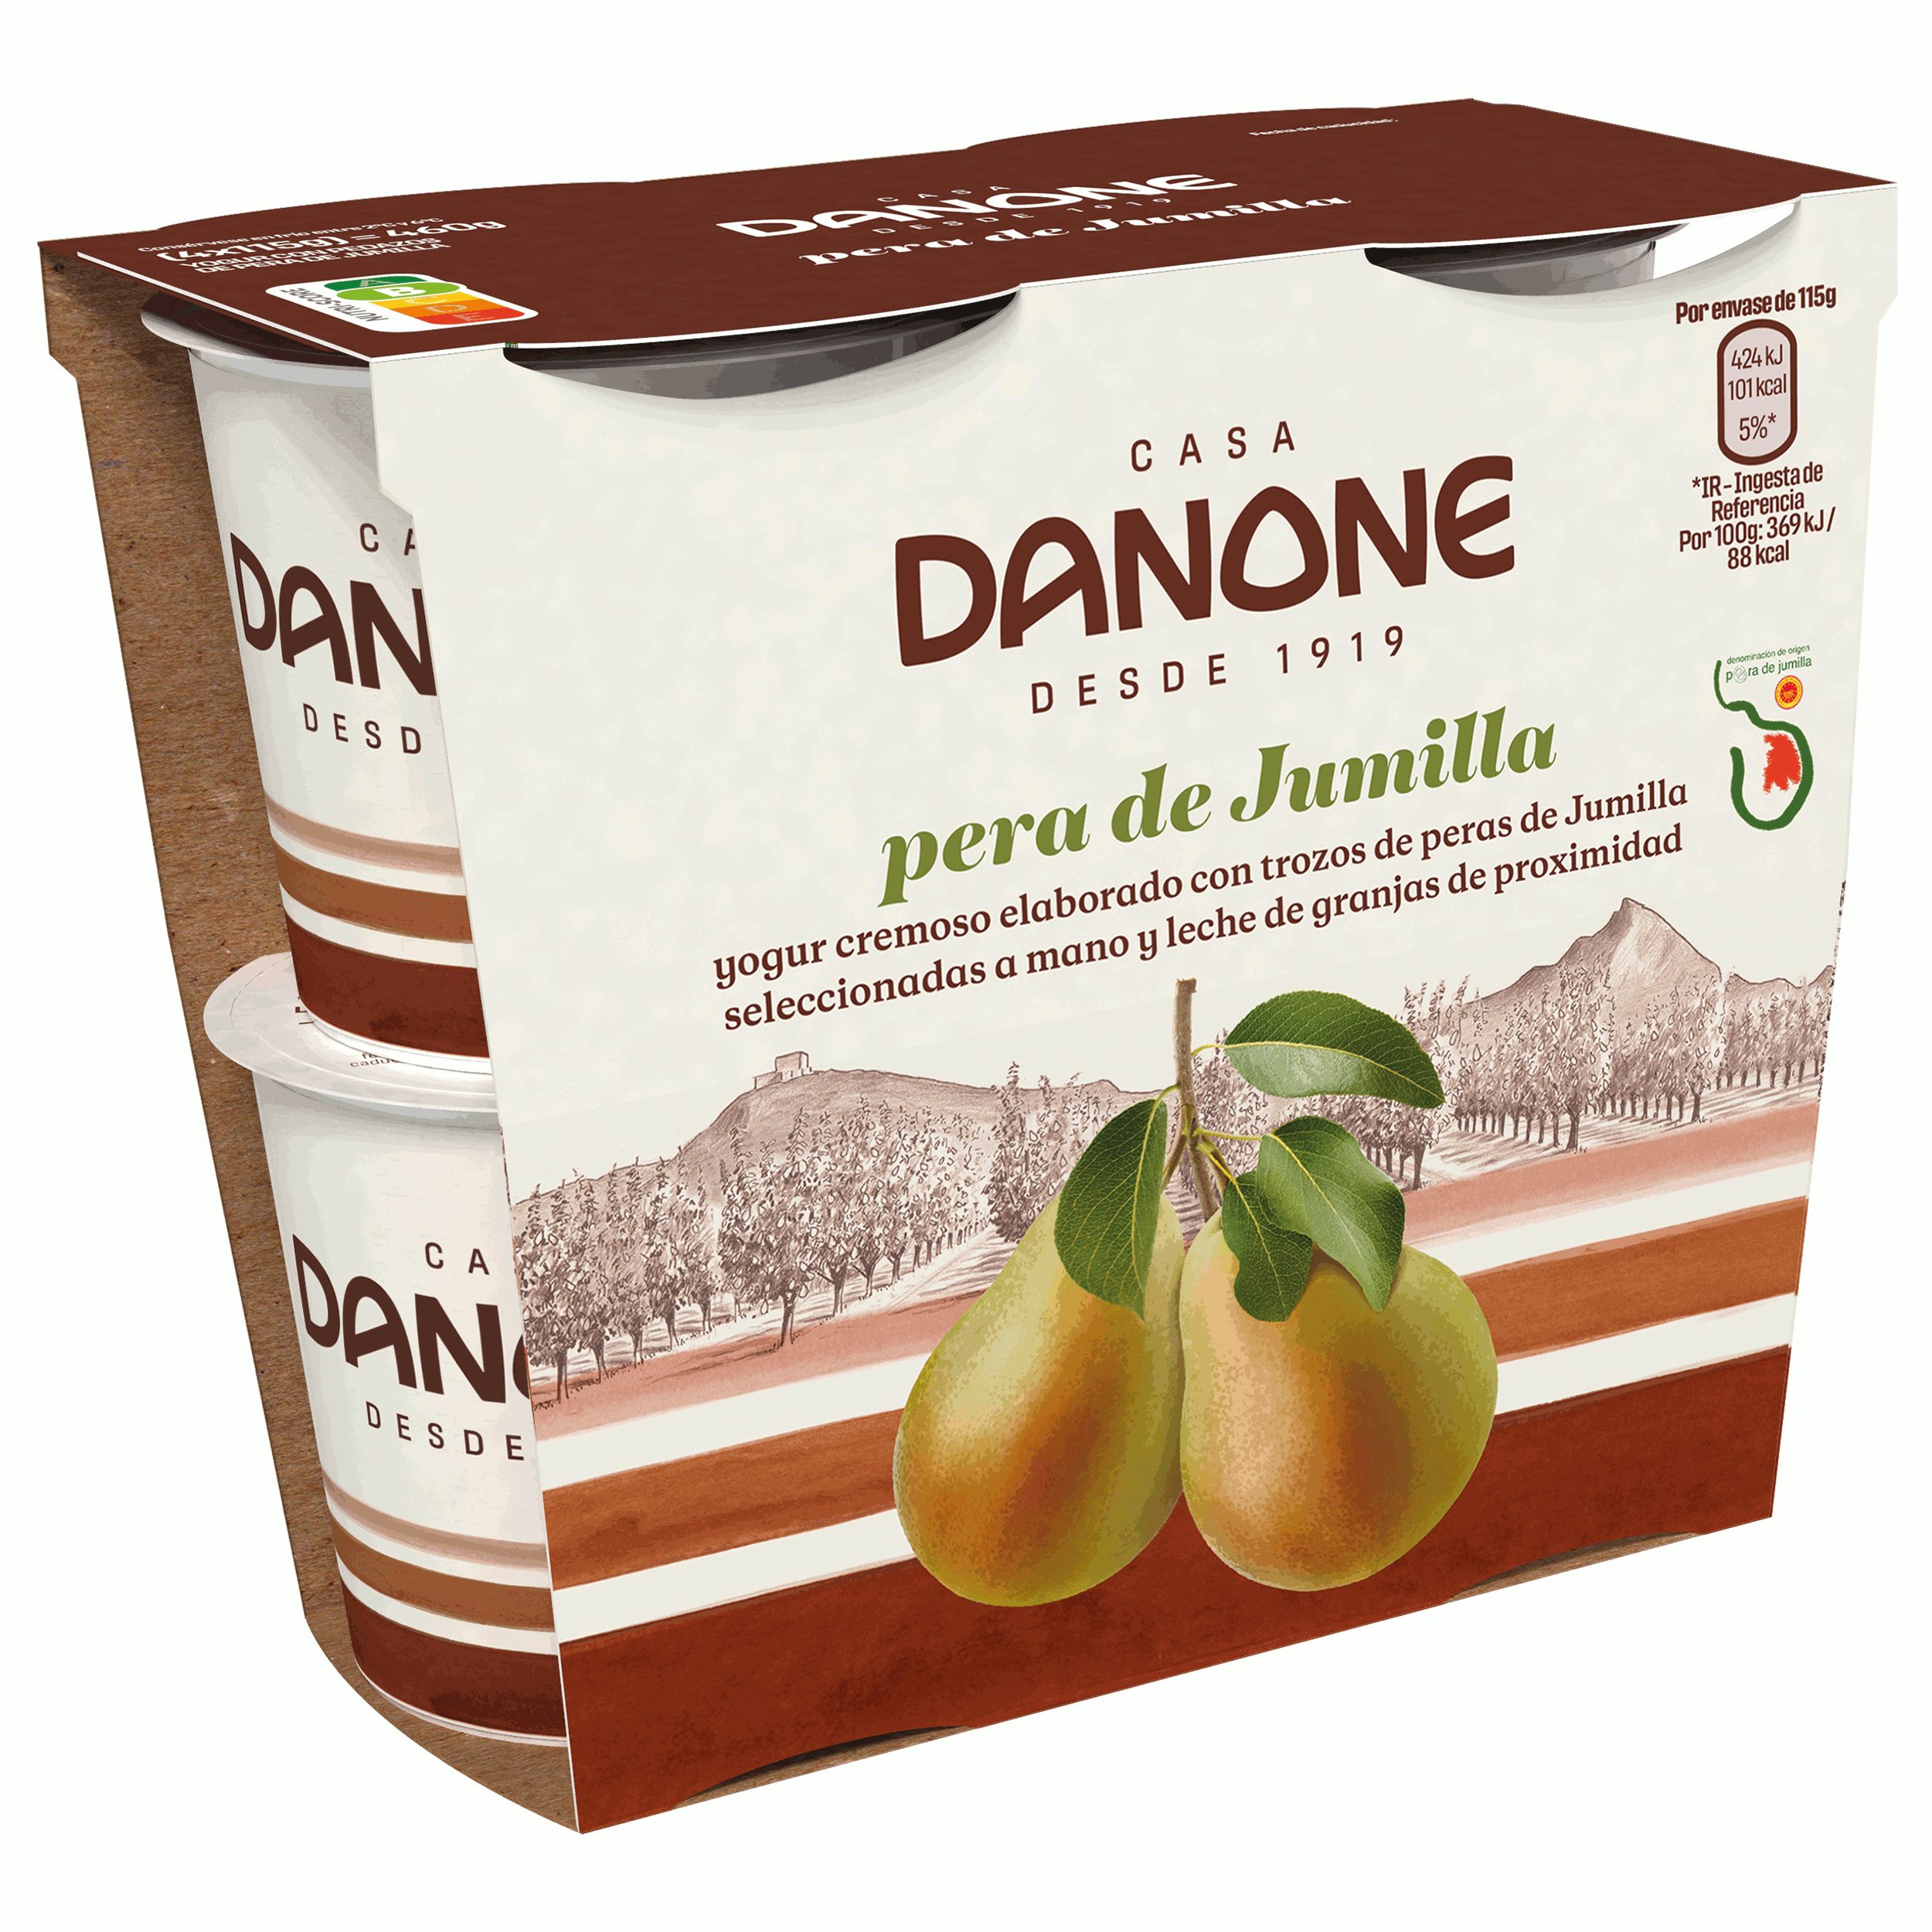 El grupo Danone elige la Pera de Jumilla para lanzar su yogur cremoso con frutas regionales